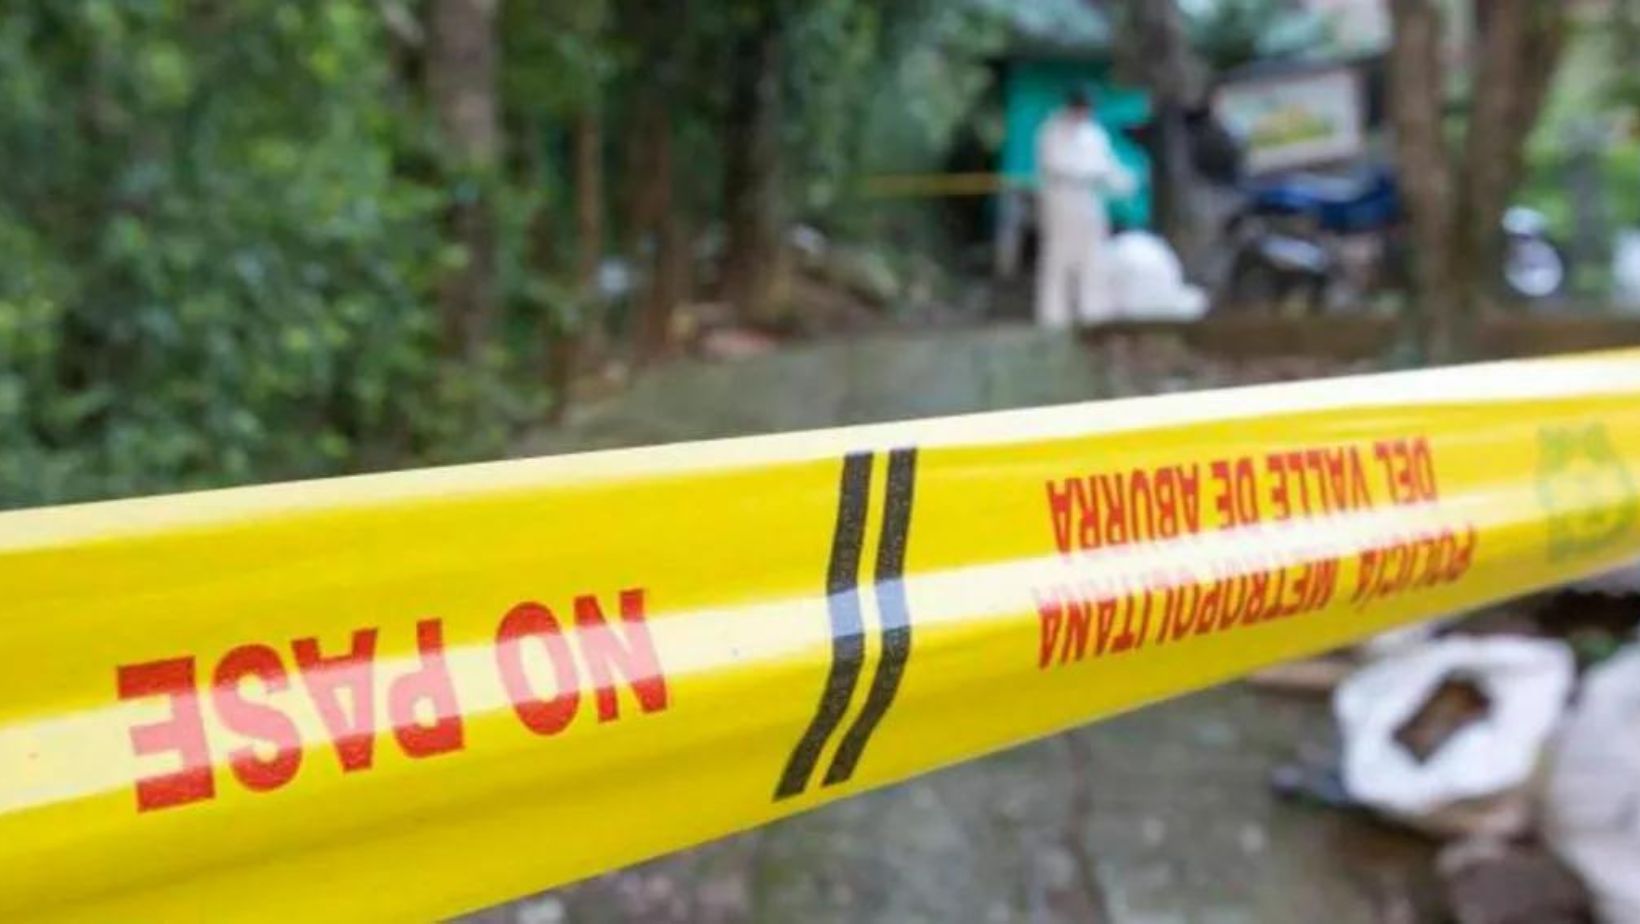 Nuevo caso de embolsado en Antioquia: encontraron cuerpo en costales y cinta